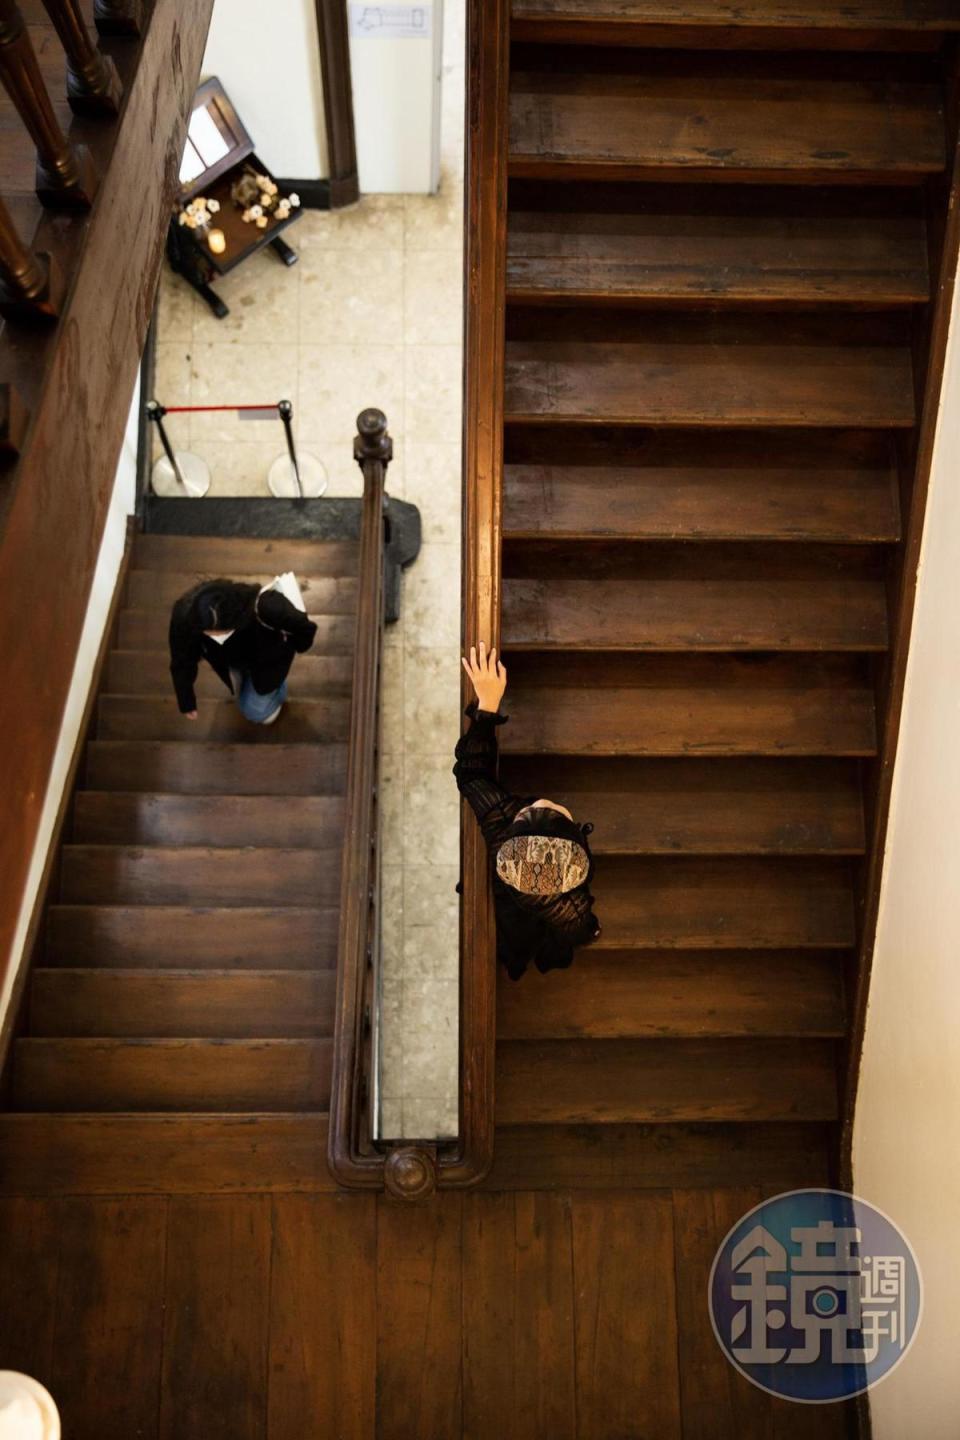 台中市役所的木造樓梯充滿歲月痕跡，走起來嘎嘎作響。